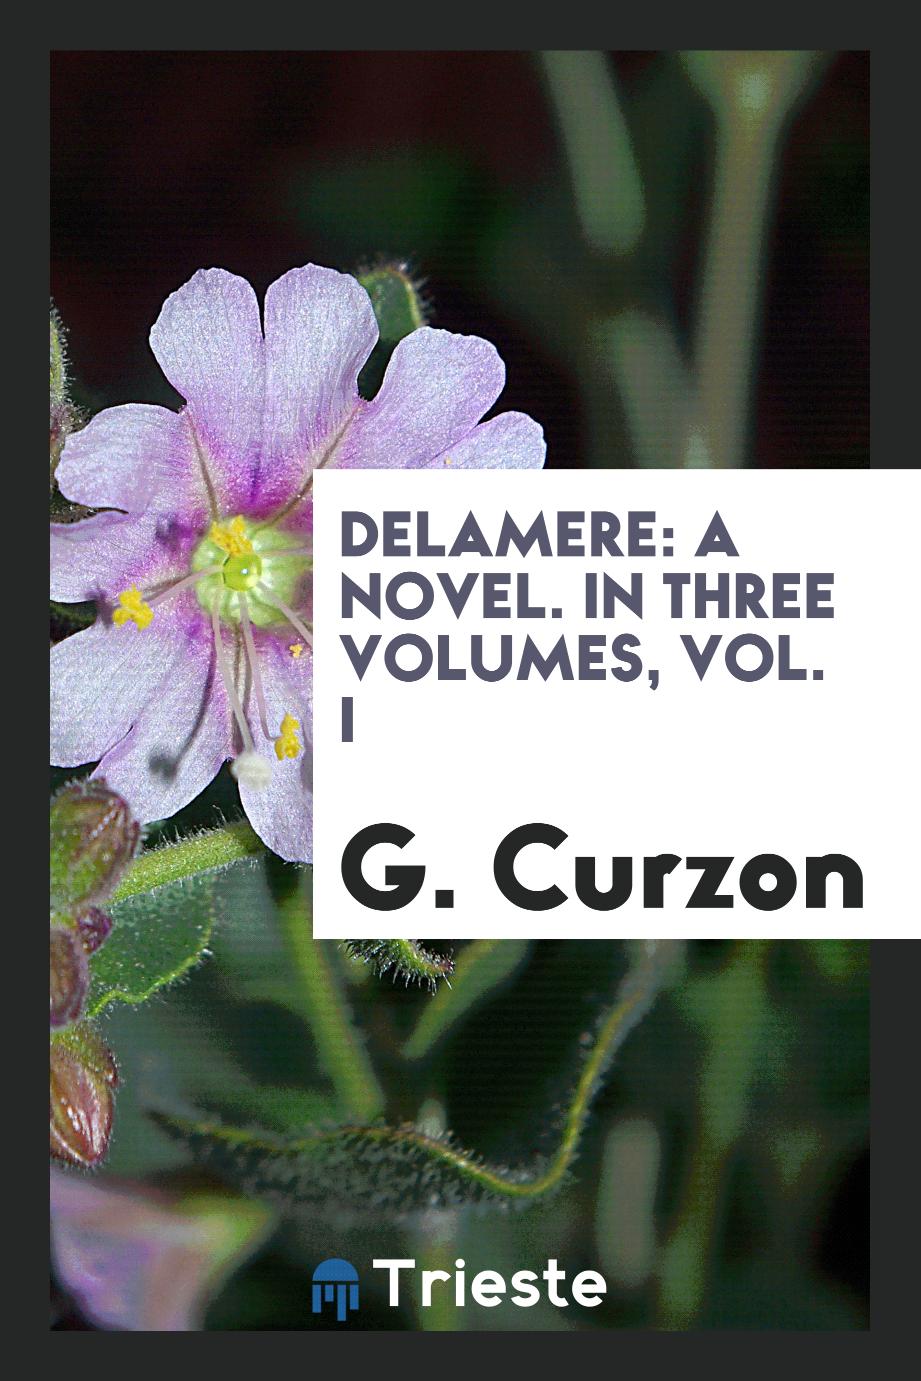 Delamere: a novel. In three volumes, vol. I